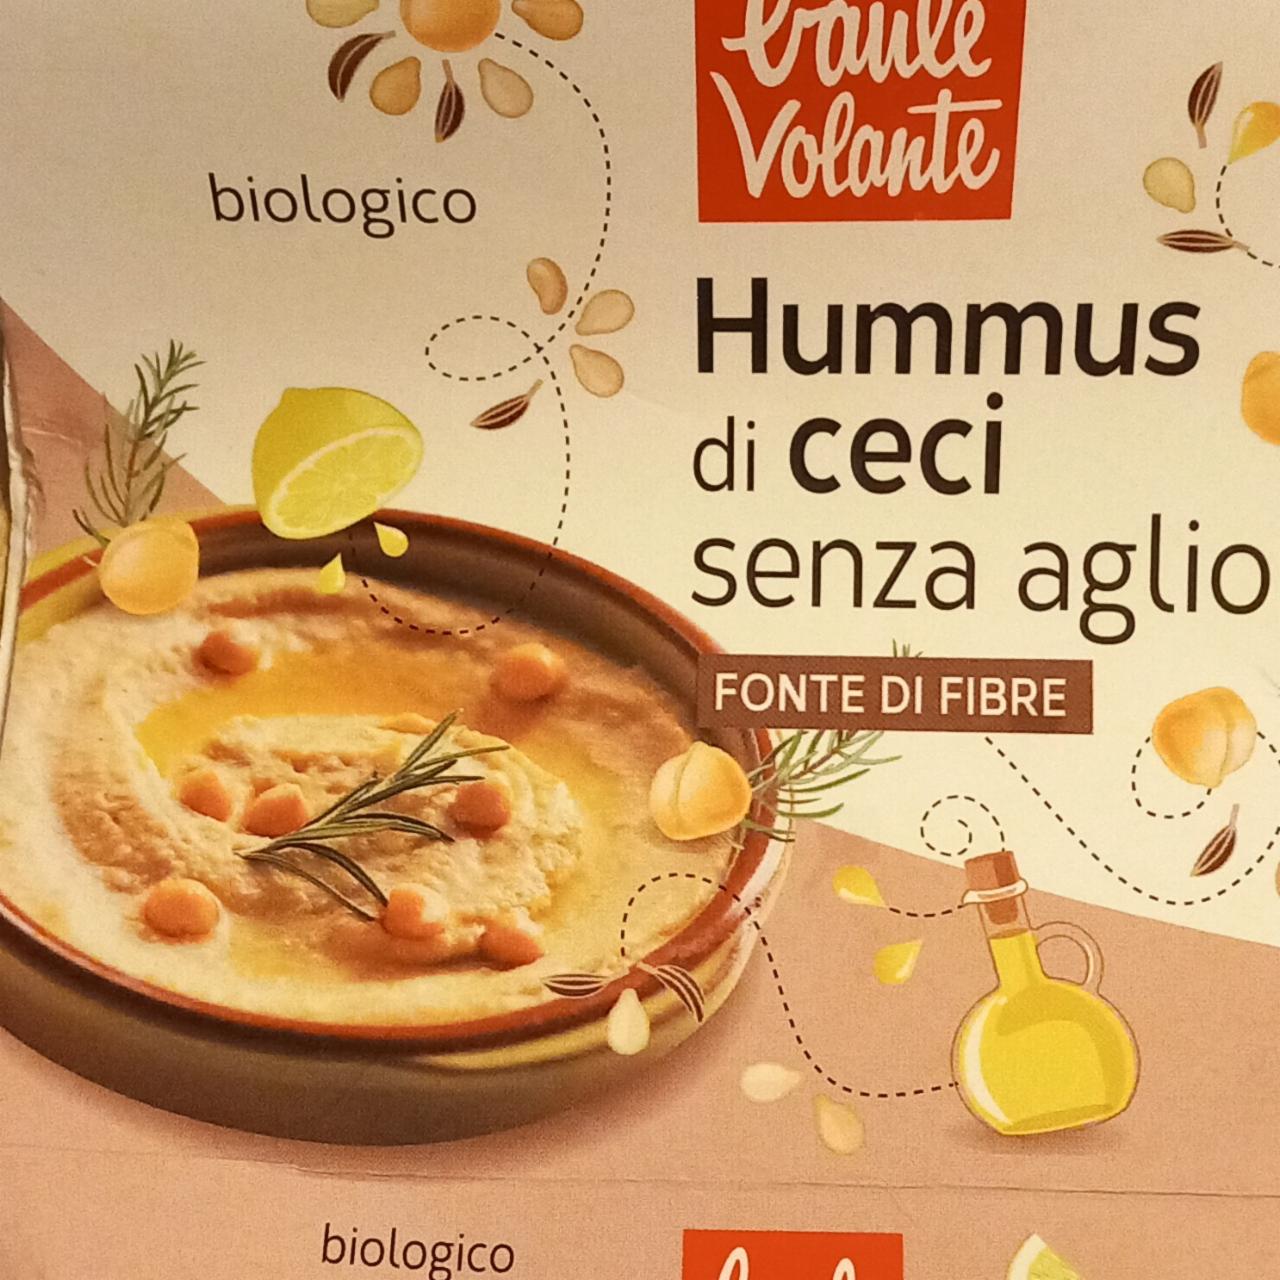 Fotografie - Hummus di ceci senza aglio Baule volante